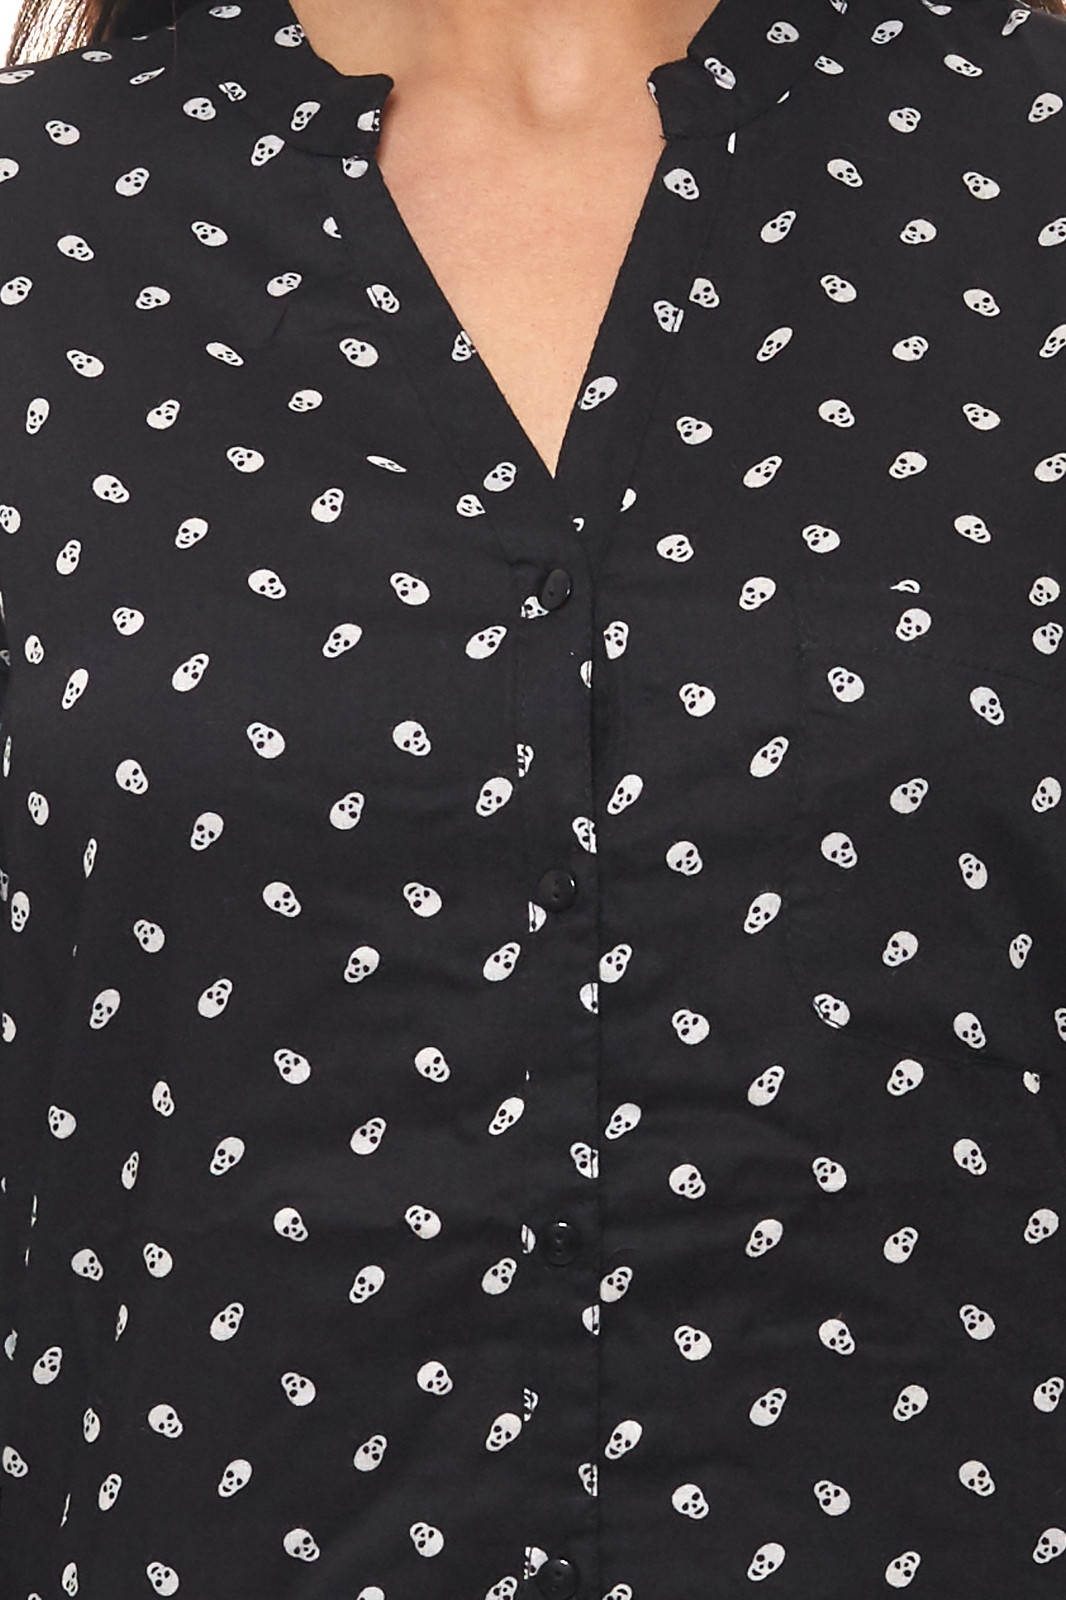 Totenkopf-Muster Bluse Schwarz/Weiß mit Damen schicke AjC Langarm-Bluse